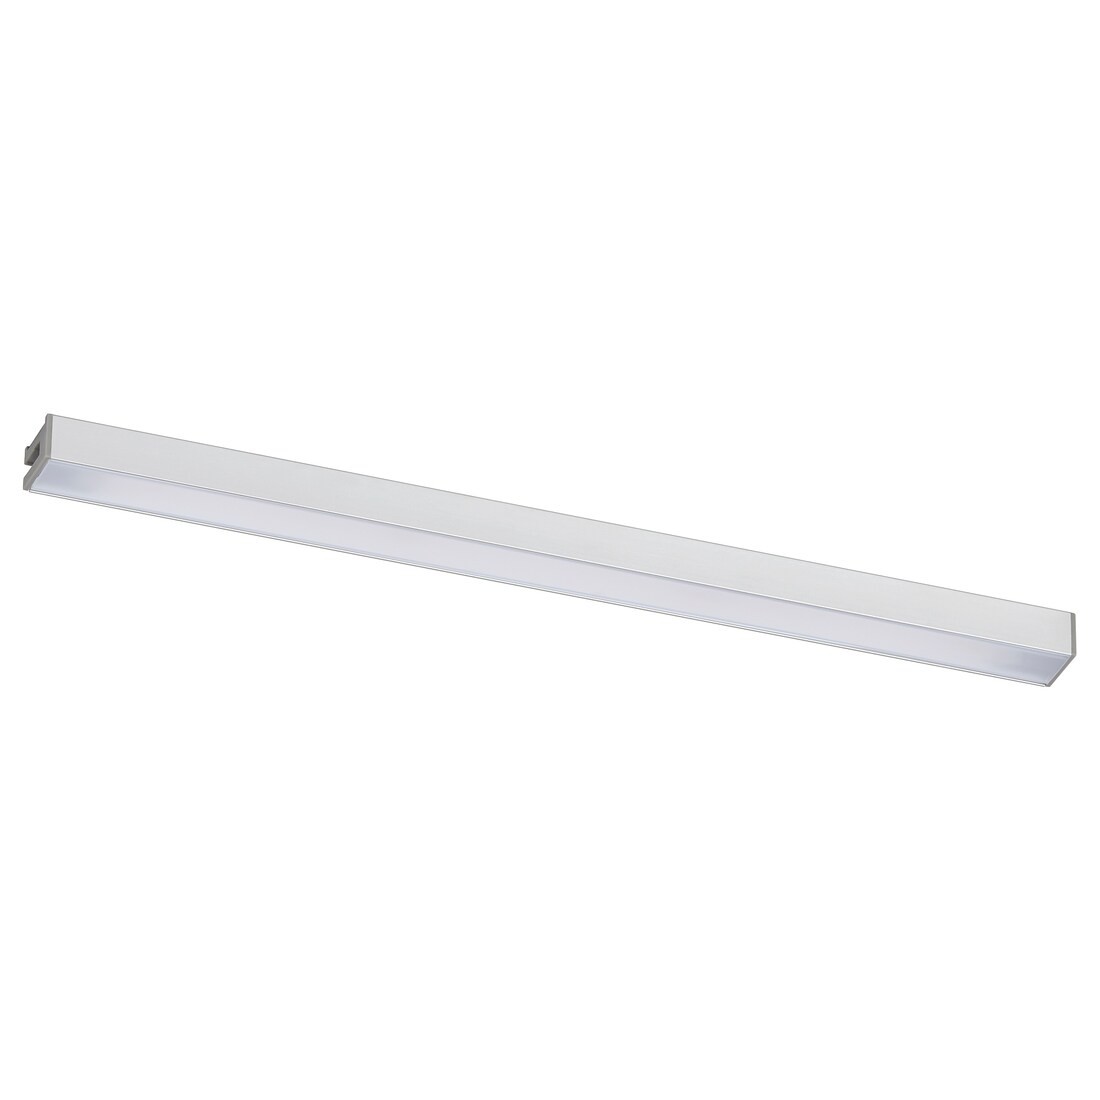 IKEA MITTLED МИТЛЕД Светодиодная LED подсветка столешницы, затемняемый серебро, 30 см 30528378 305.283.78